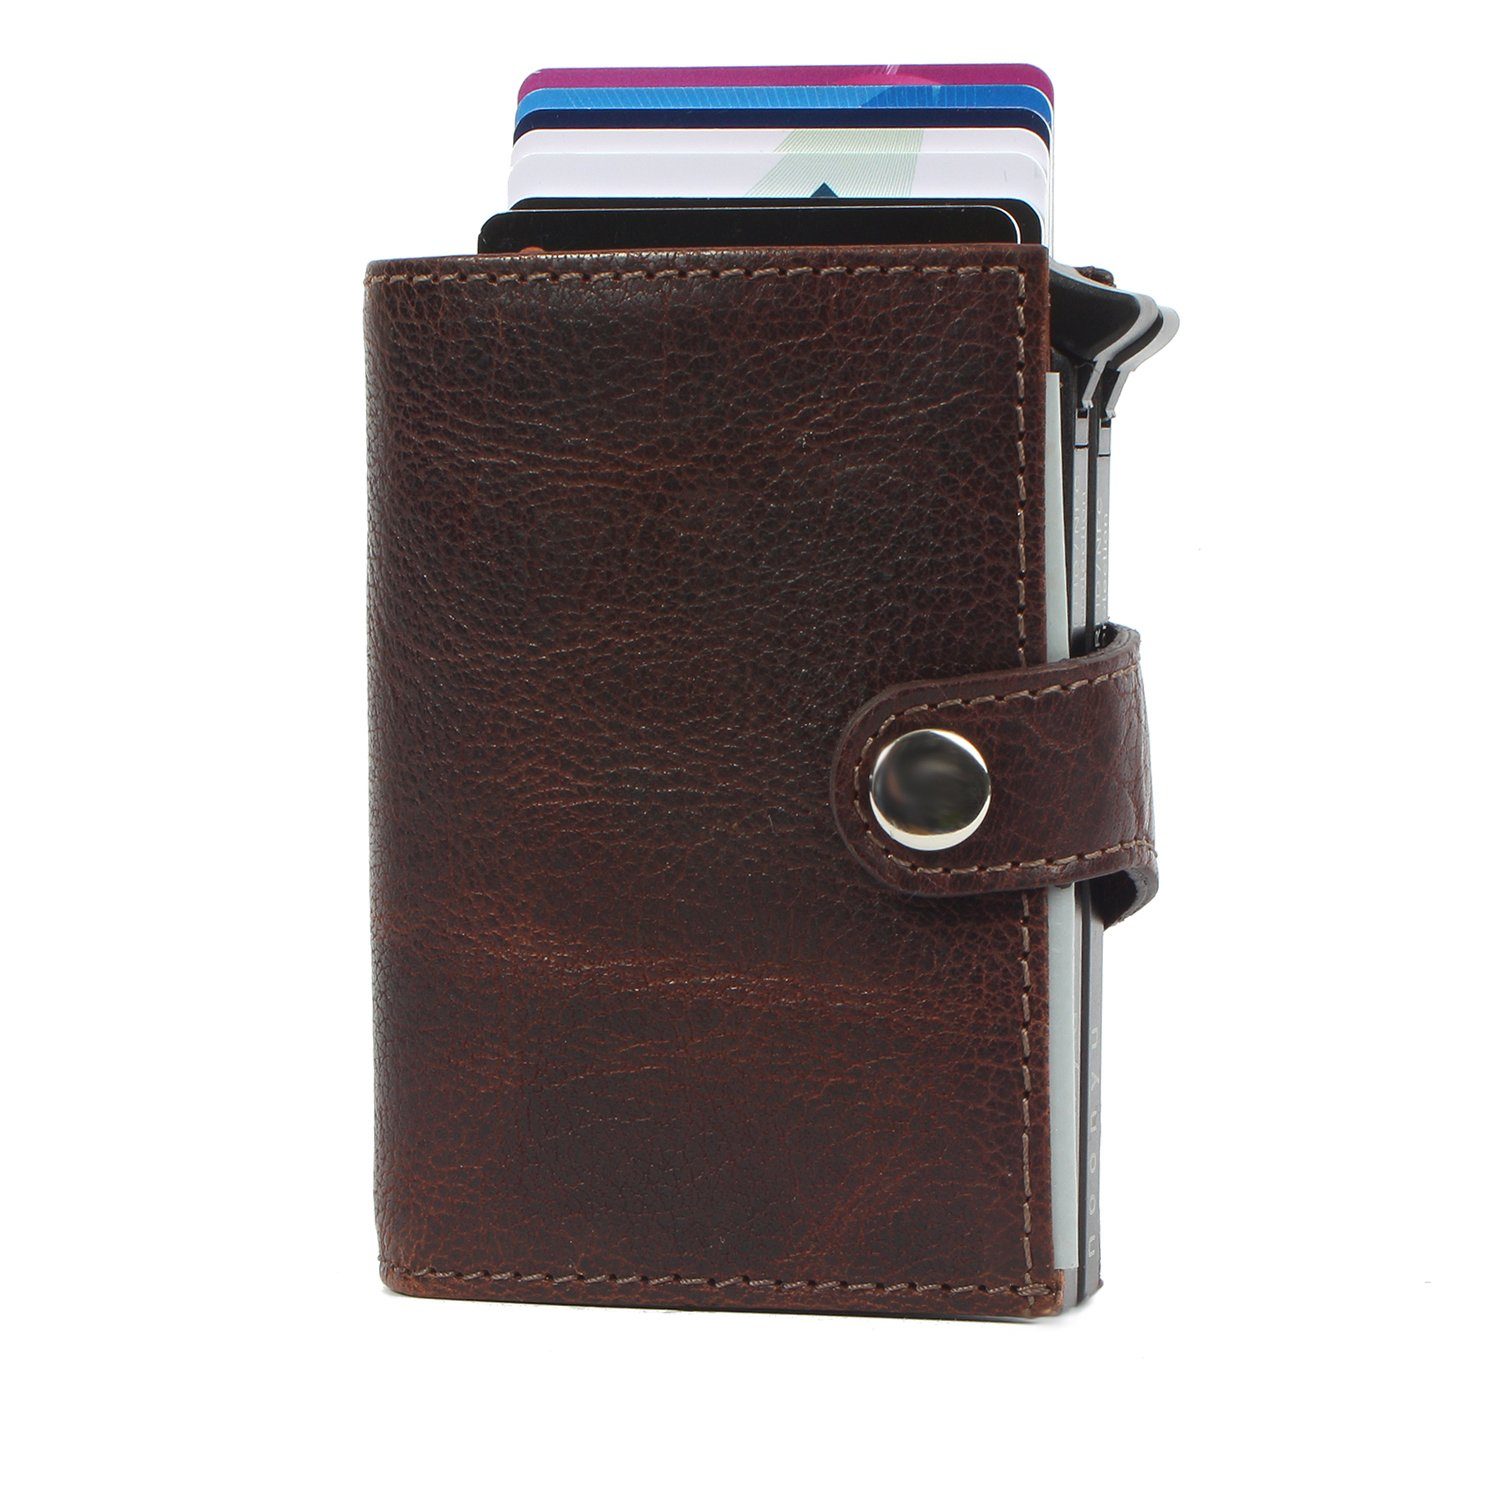 Margelisch Mini Geldbörse leather, double Kreditkartenbörse noonyu Upcycling aus Leder brown RFID